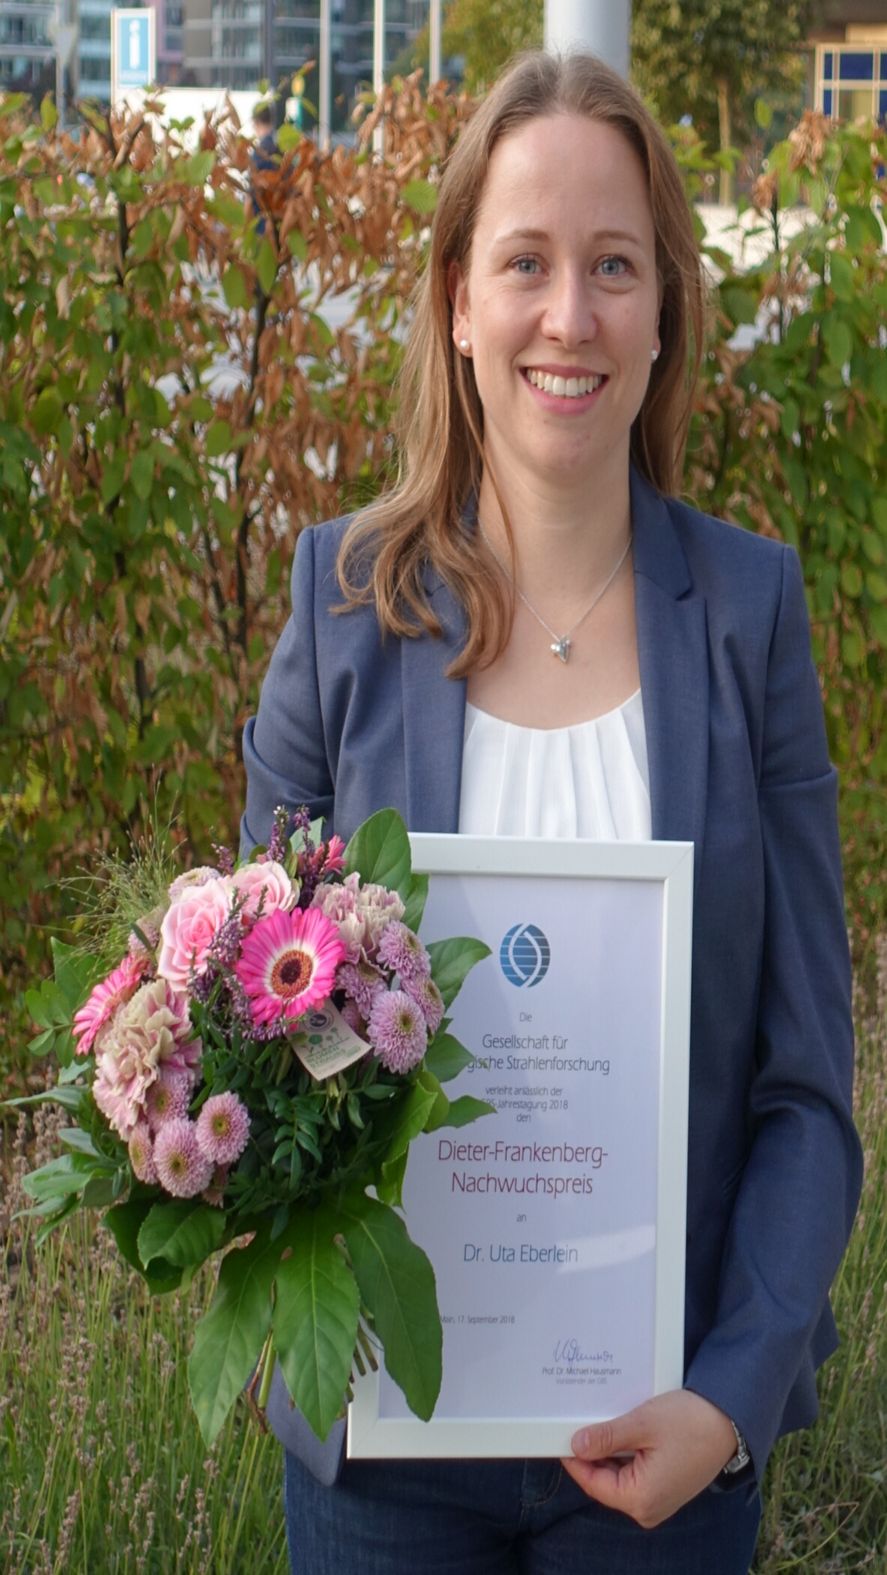 Dr. Uta Eberlein ist diesjährige Preisträgerin des Dieter-Frankenberg-Nachwuchspreises